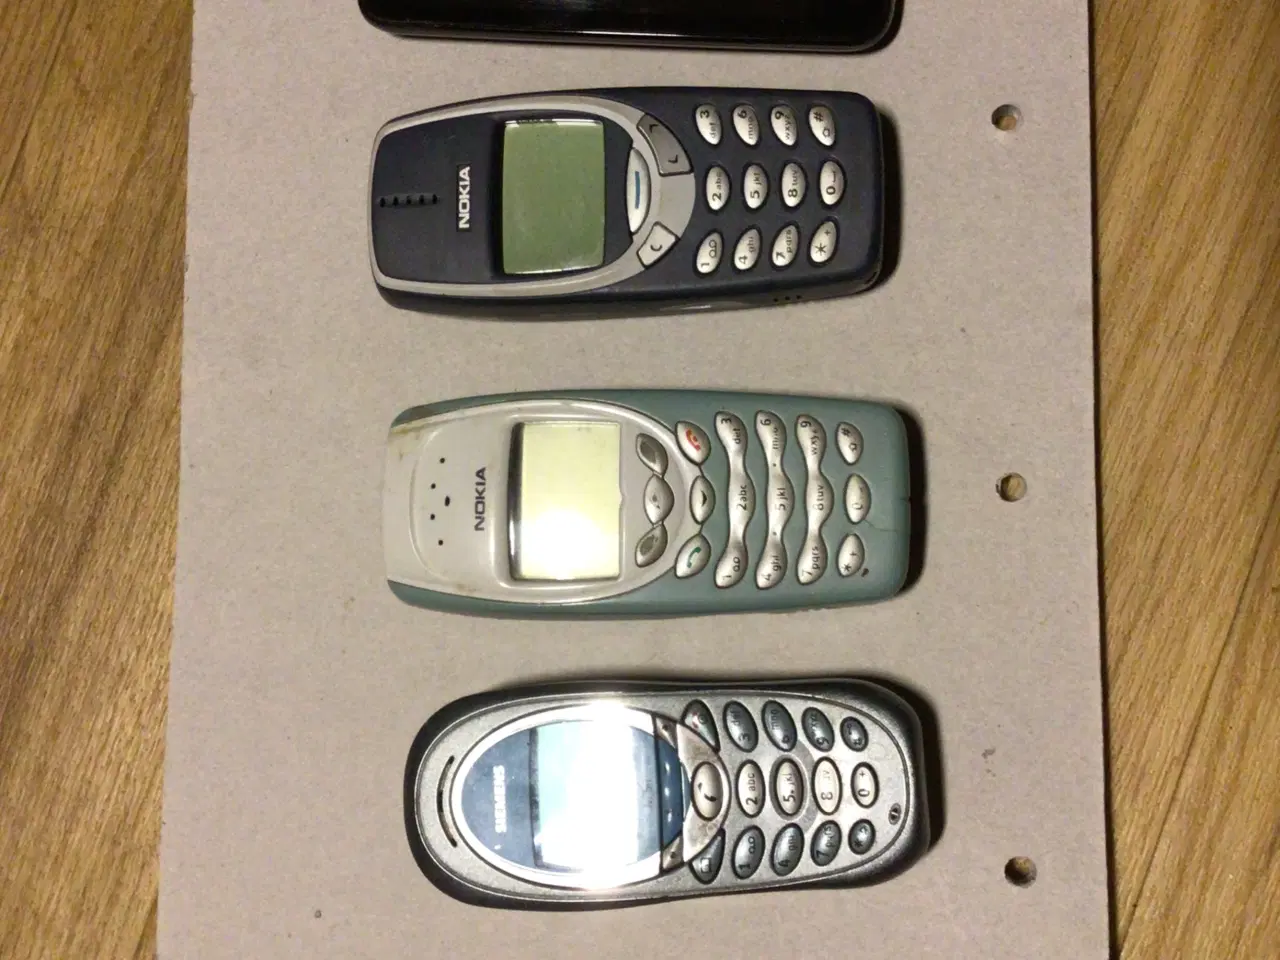 Billede 1 - Gamle mobil telefoner. 